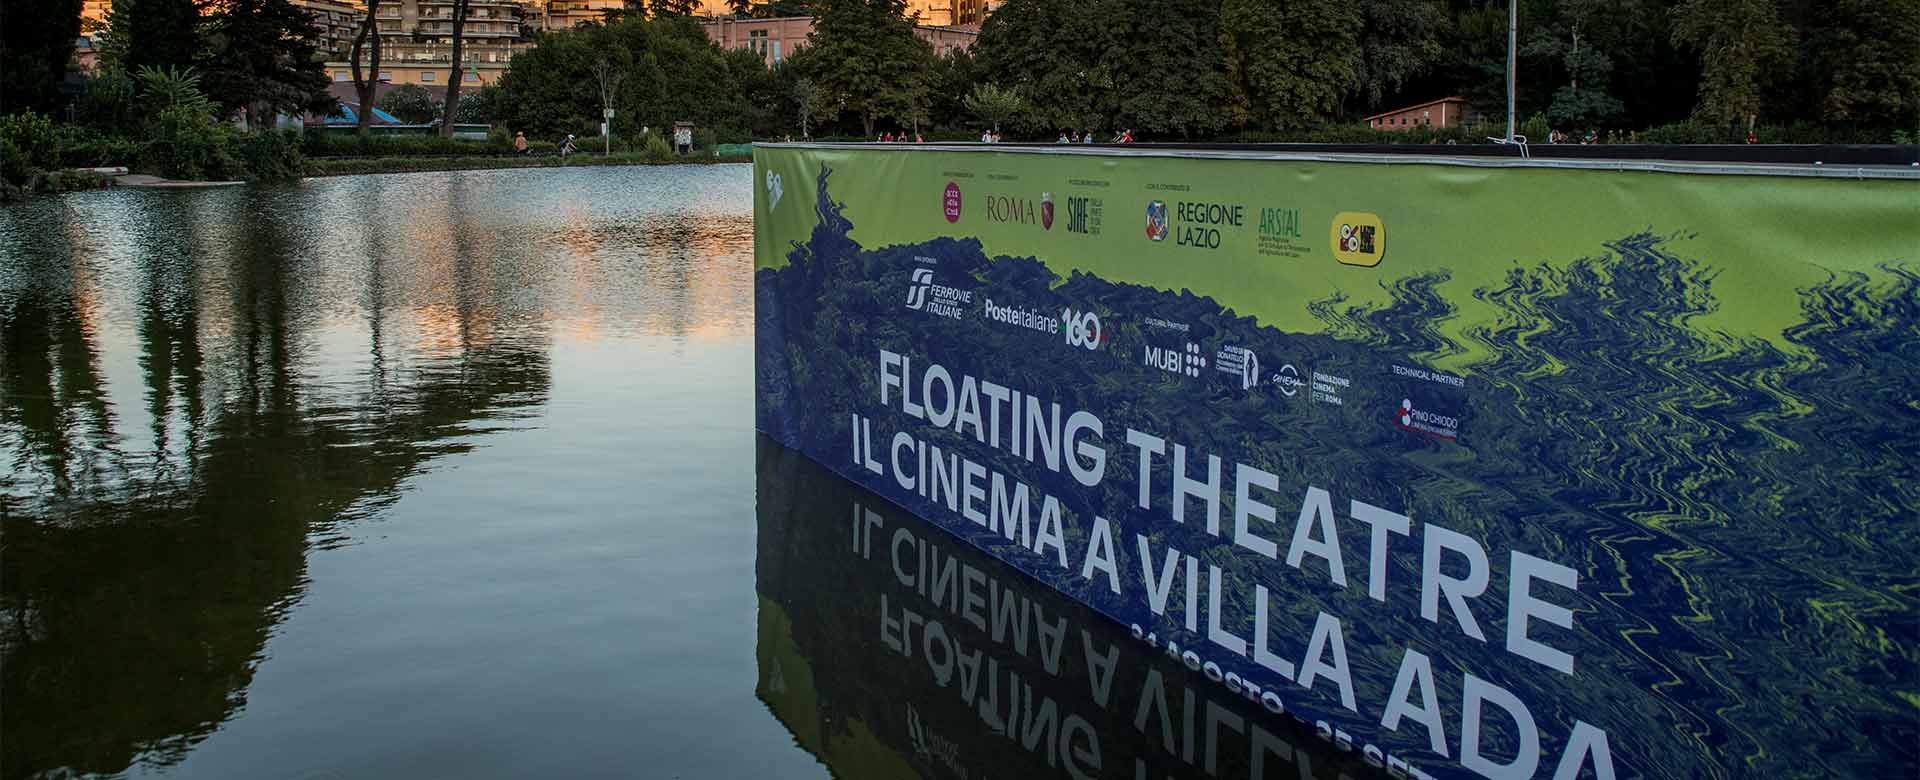 Floating Theatre, la rassegna cinematografica a Roma di cui il Gruppo FS è Main Sponsor